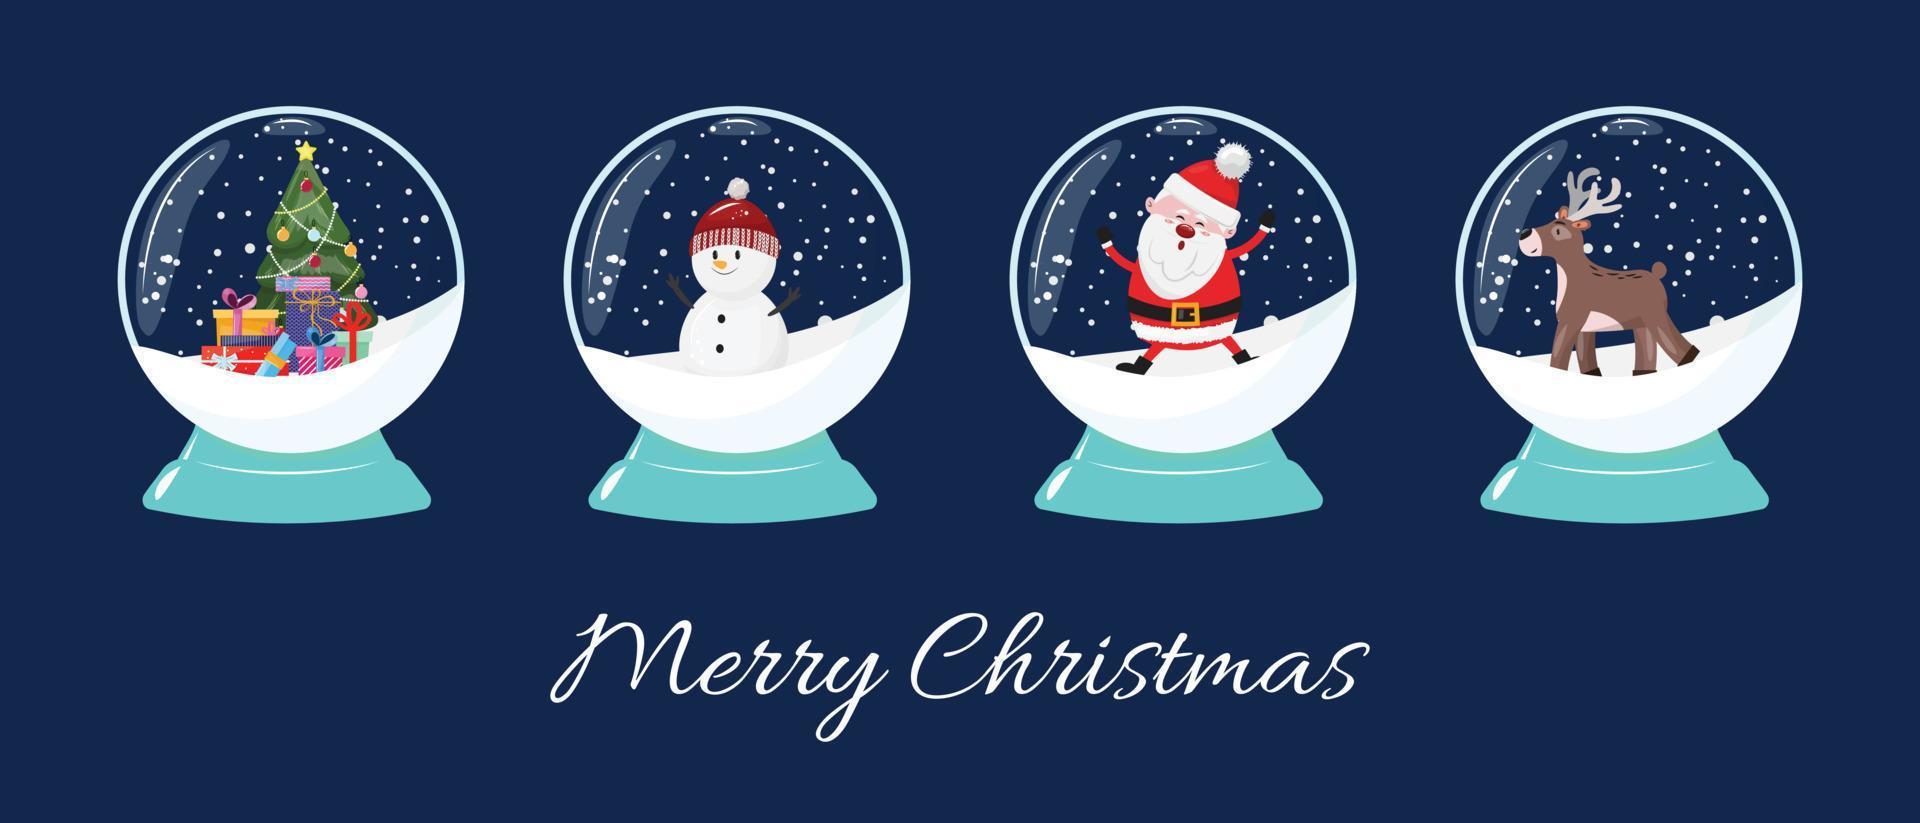 jul tecknad serie illustration av snö kloten med snögubbe, santa claus, jul träd, ren. säsong- Semester, jul illustration. vektor